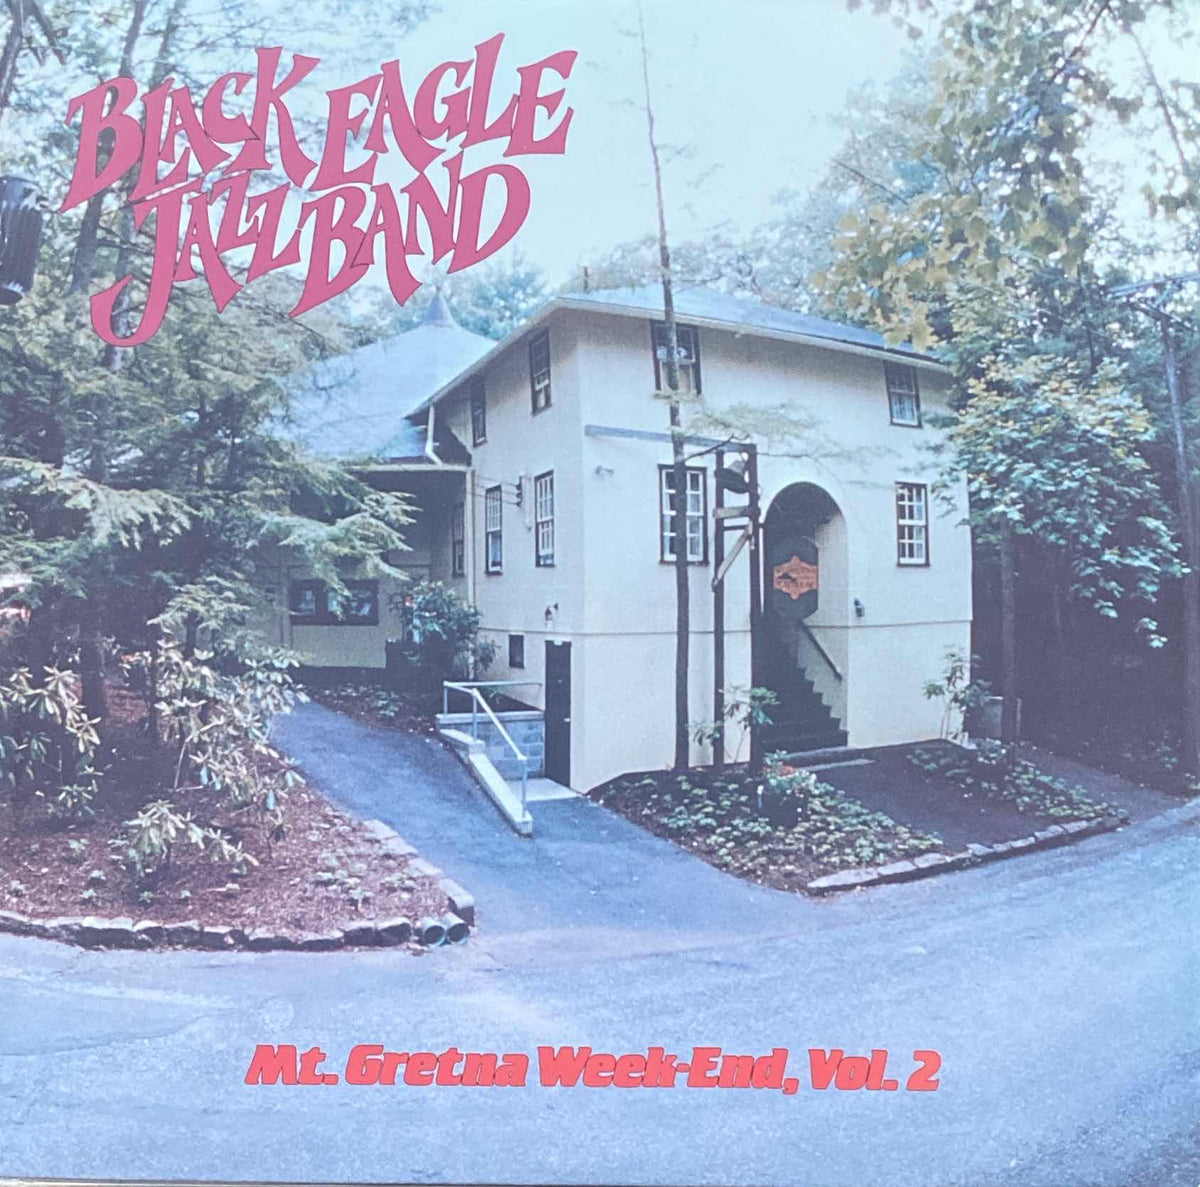 Black Eagle Jazz Band - Mt. Gretna Week-End, Vol 2